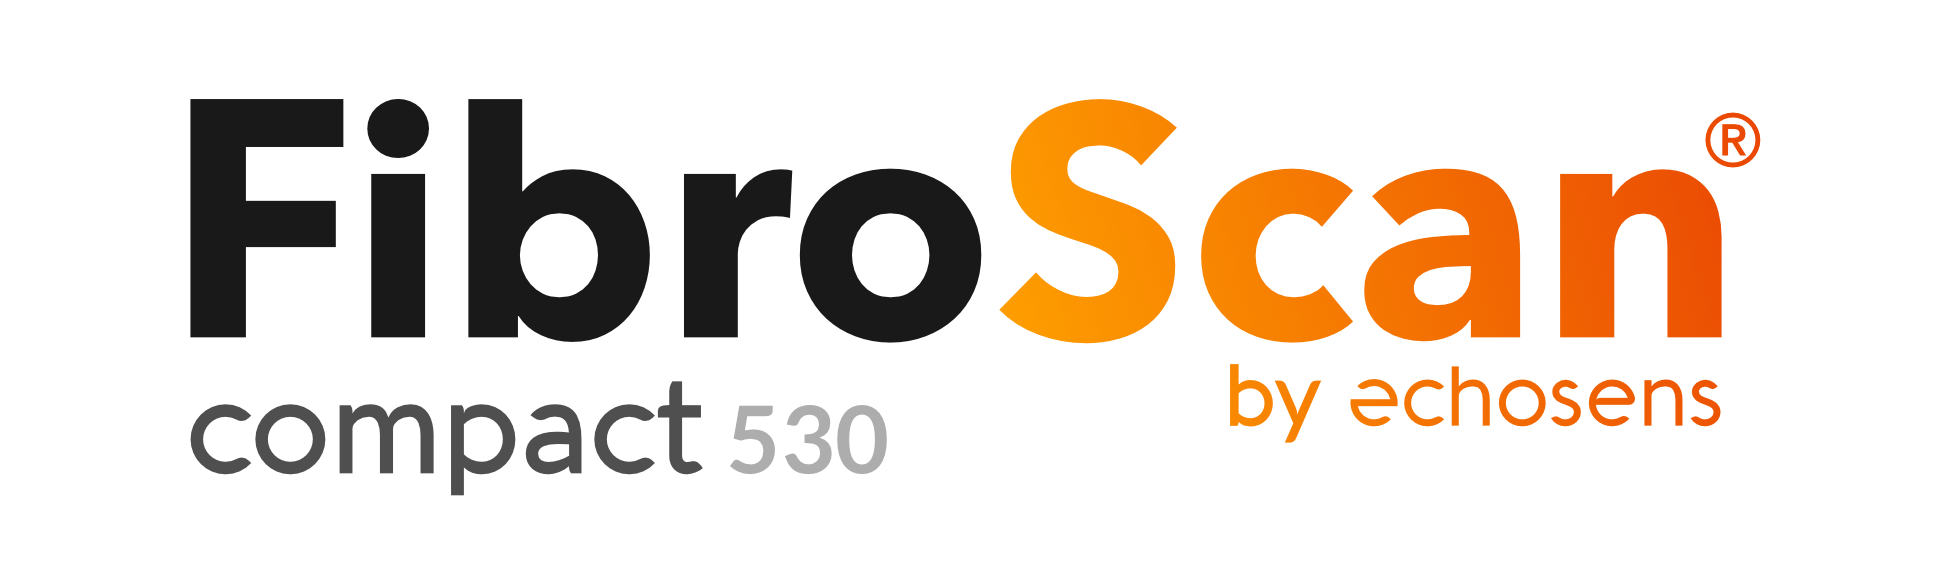 FibroScan Compact 530 logo